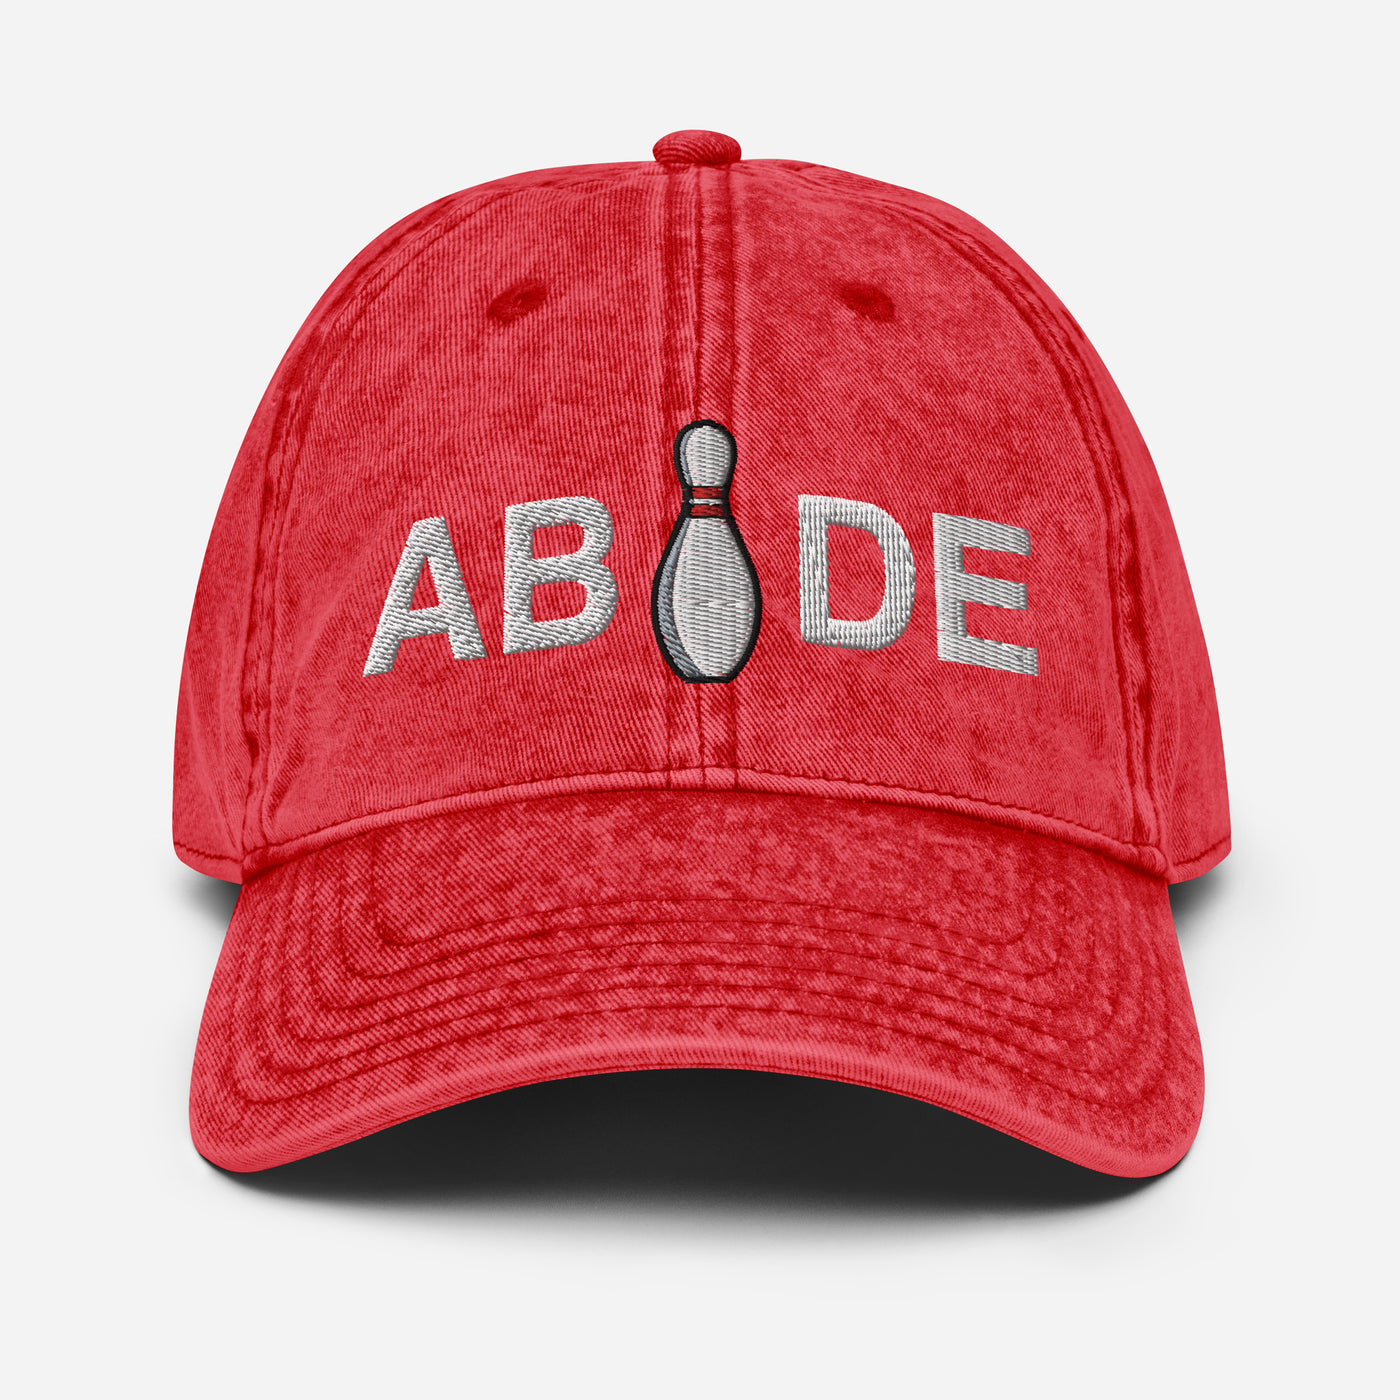 Abide Bowling Pin | Lebowksi Acid Wash Dad Hat